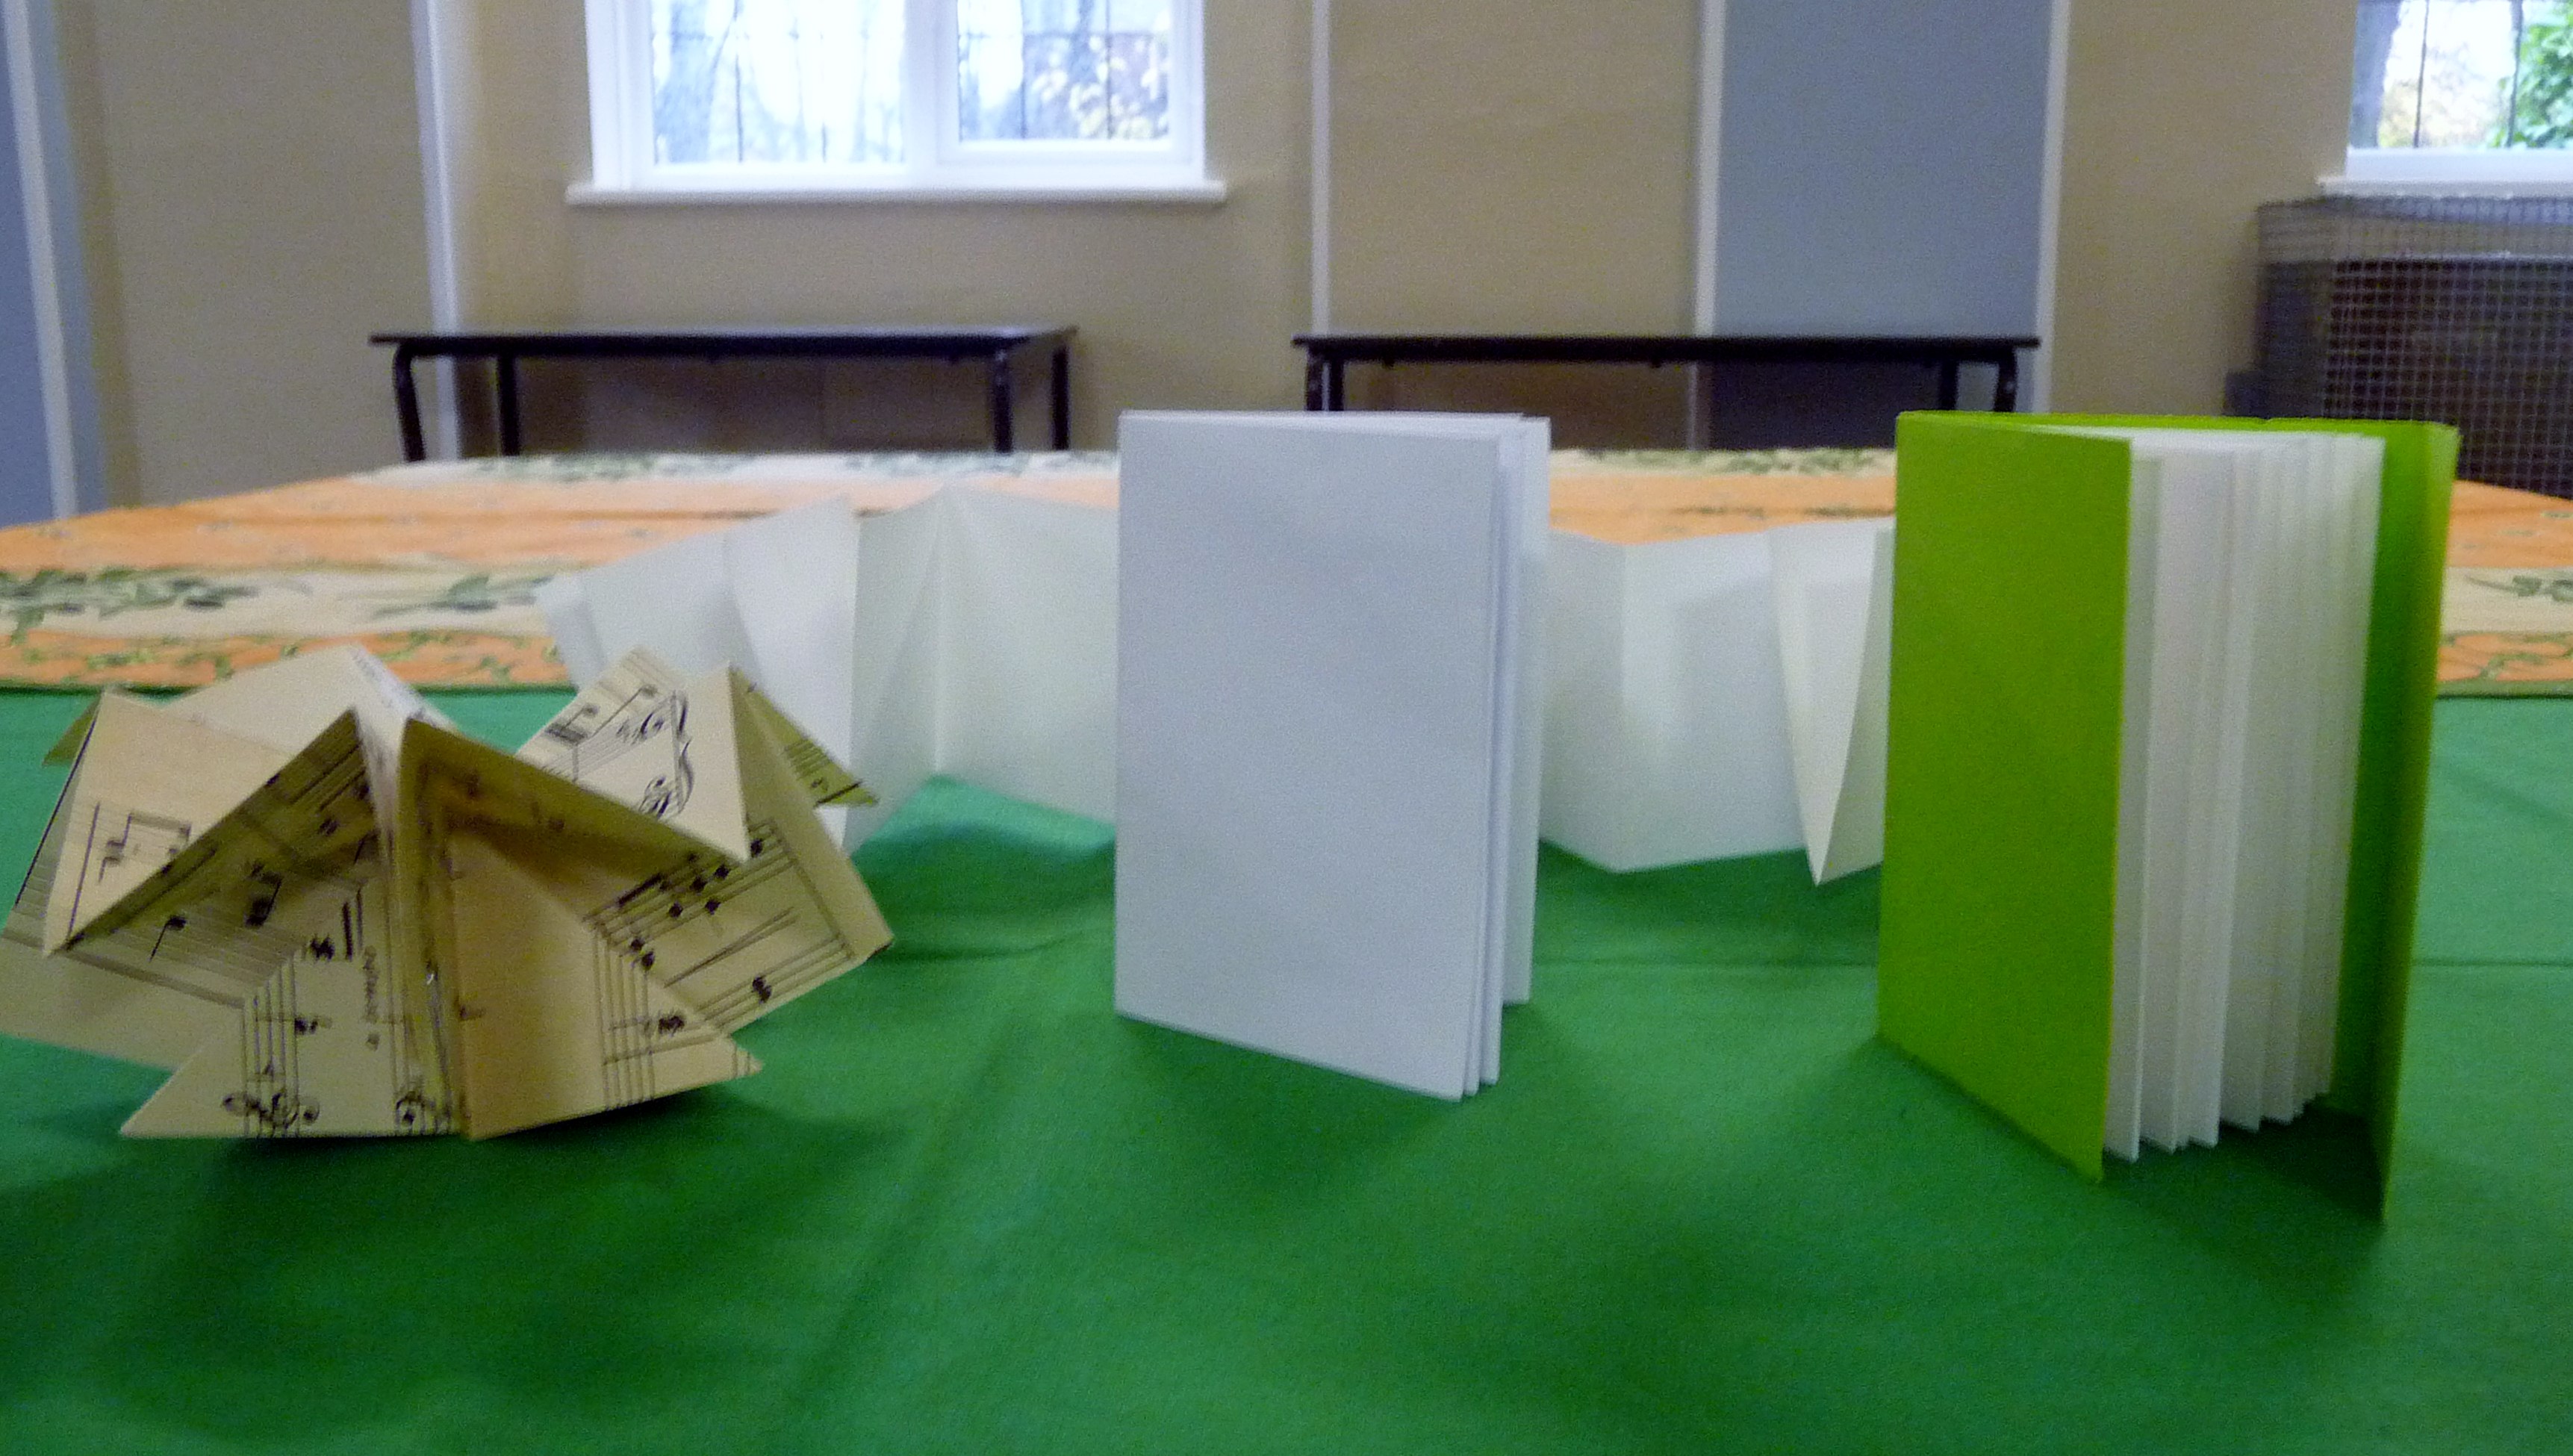 Tutor's samples from Origami books workshop, Nov 2015